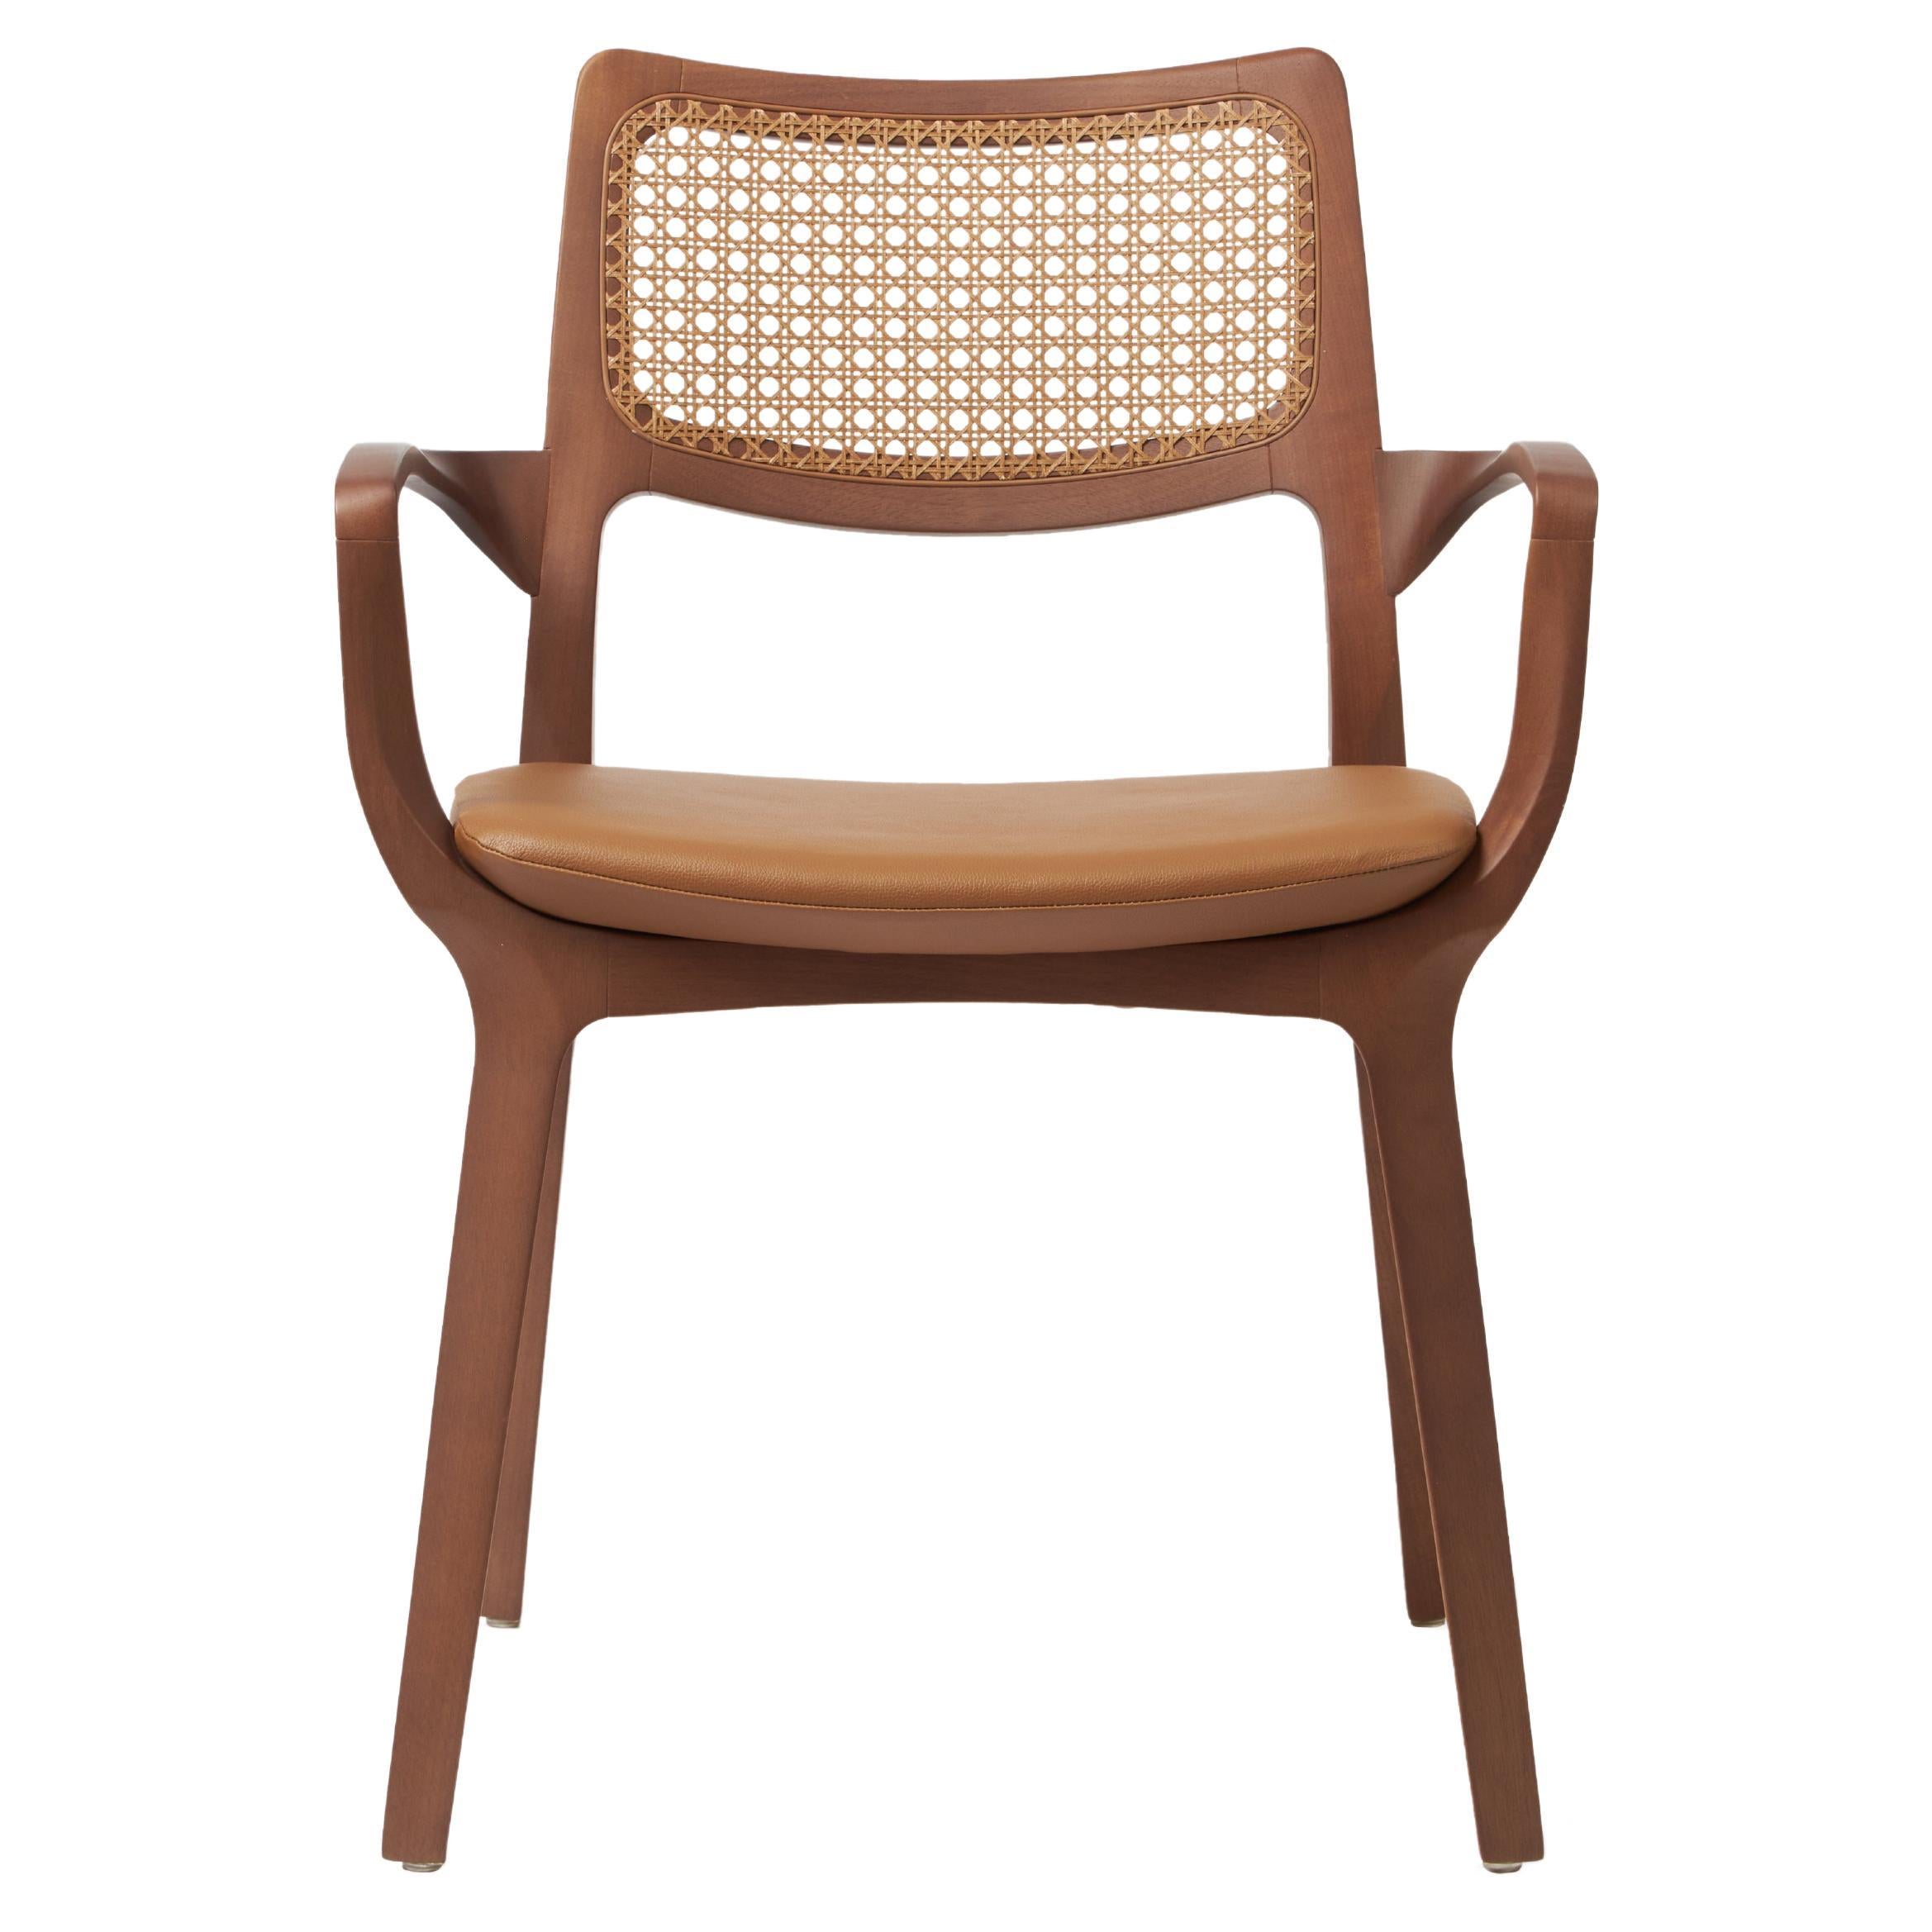 Aurora-Stuhl im modernen Stil, Armlehnen aus Nussbaumholz, Armlehnen im modernen Stil, Ledersitz, Rohr